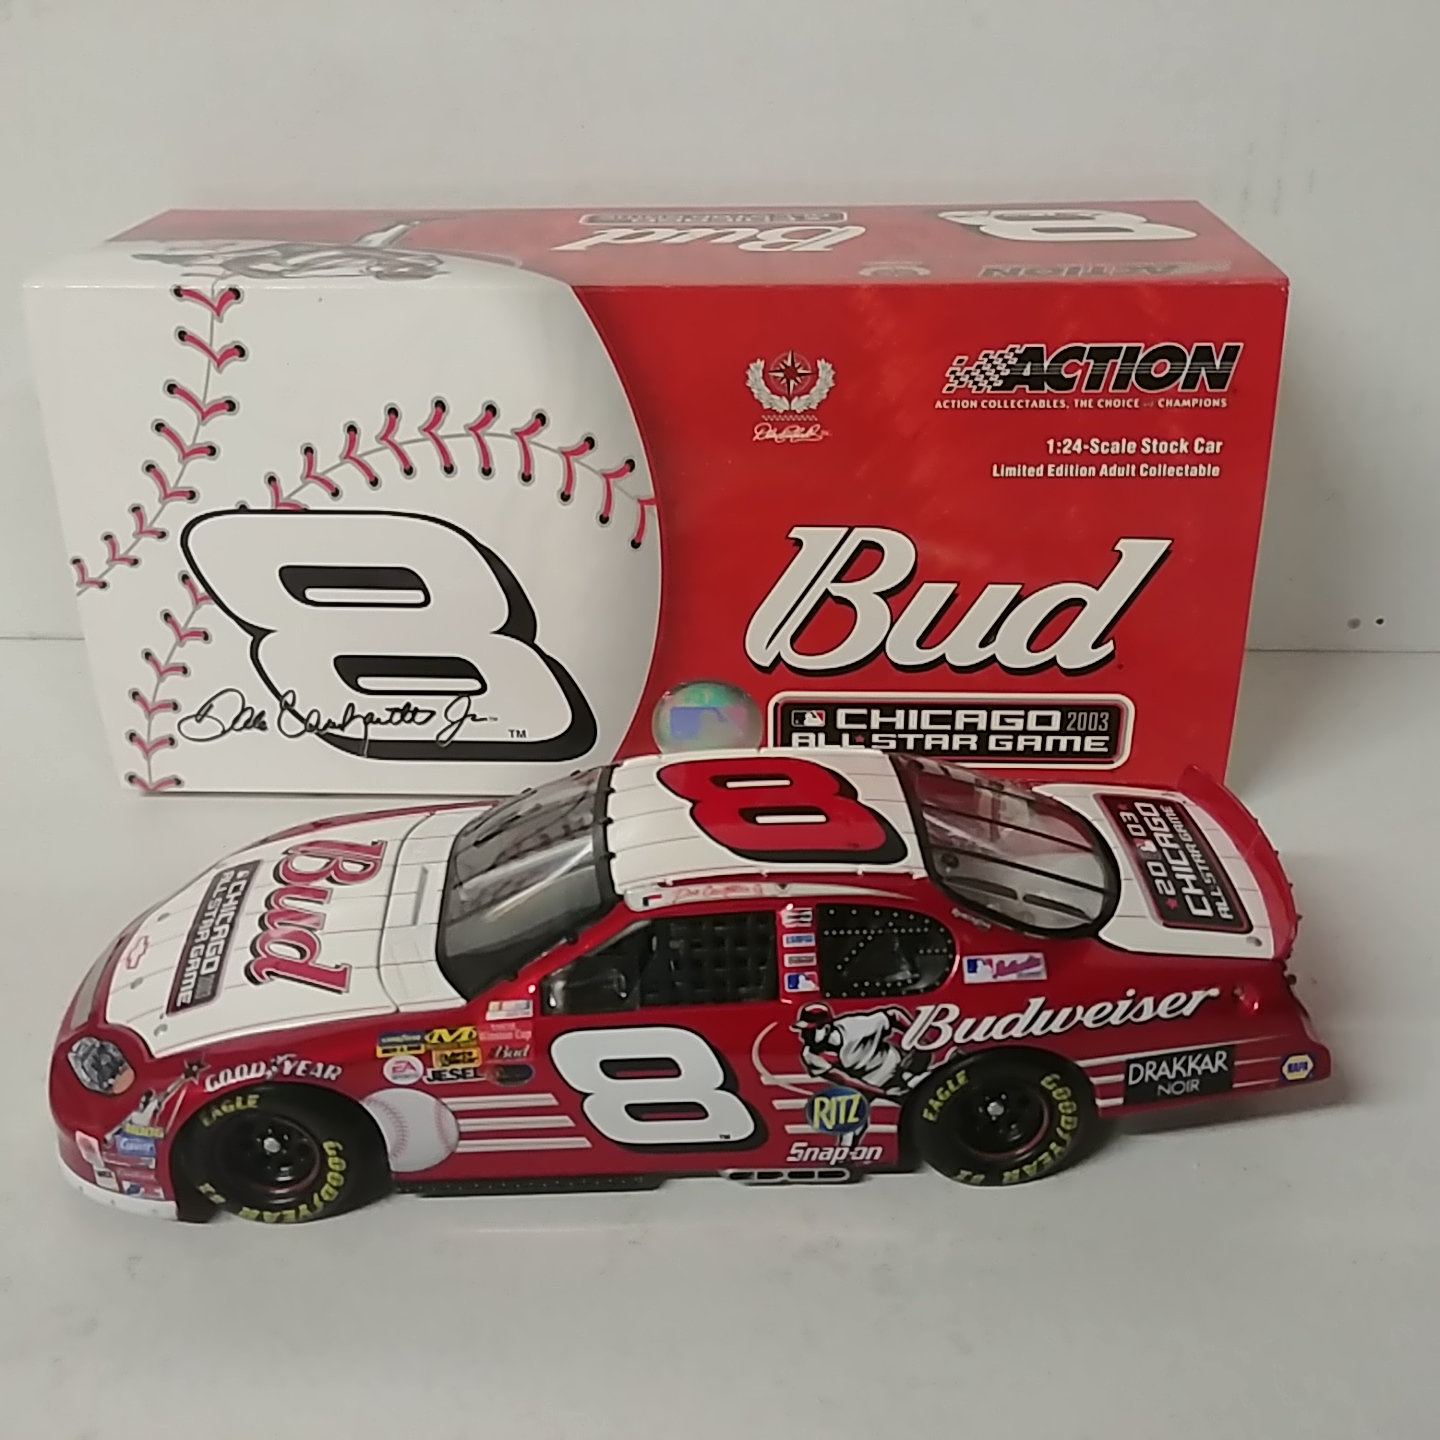 2003 Dale Earnhardt Jr 1/24th Budweiser "MLB" c/w car